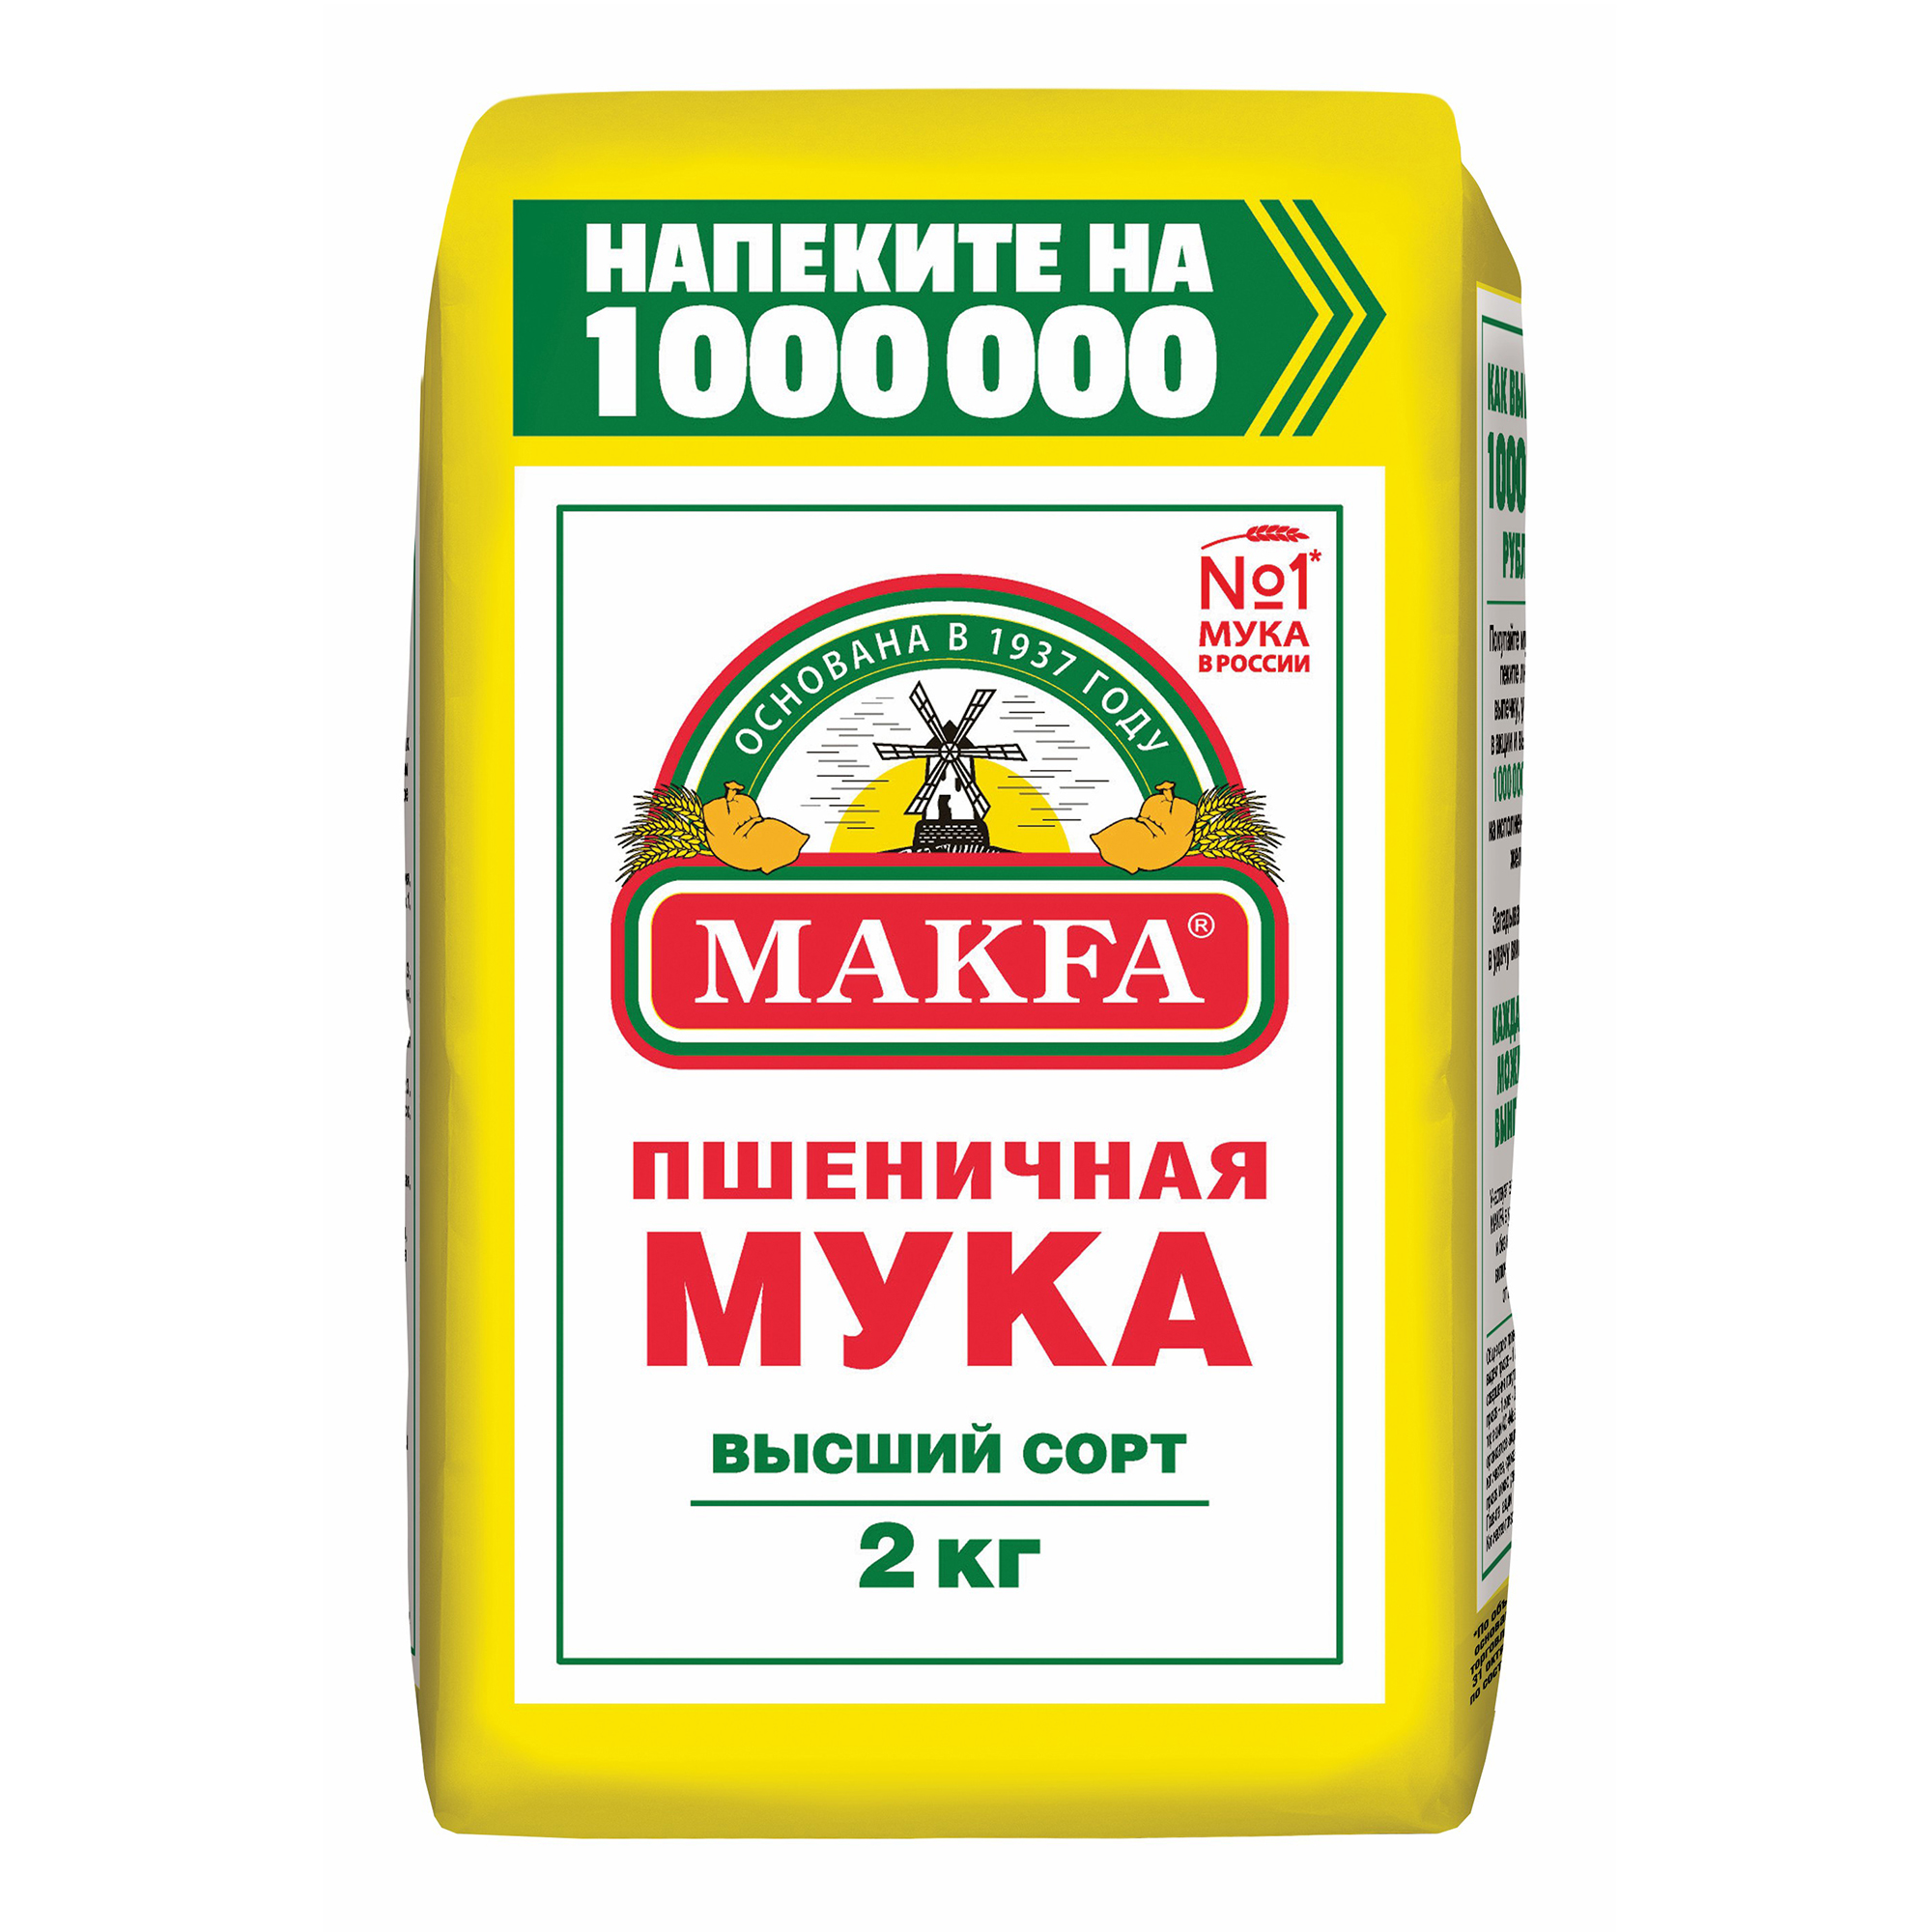 Мука Makfa пшеничная хлебопекарная высший сорт 2 кг